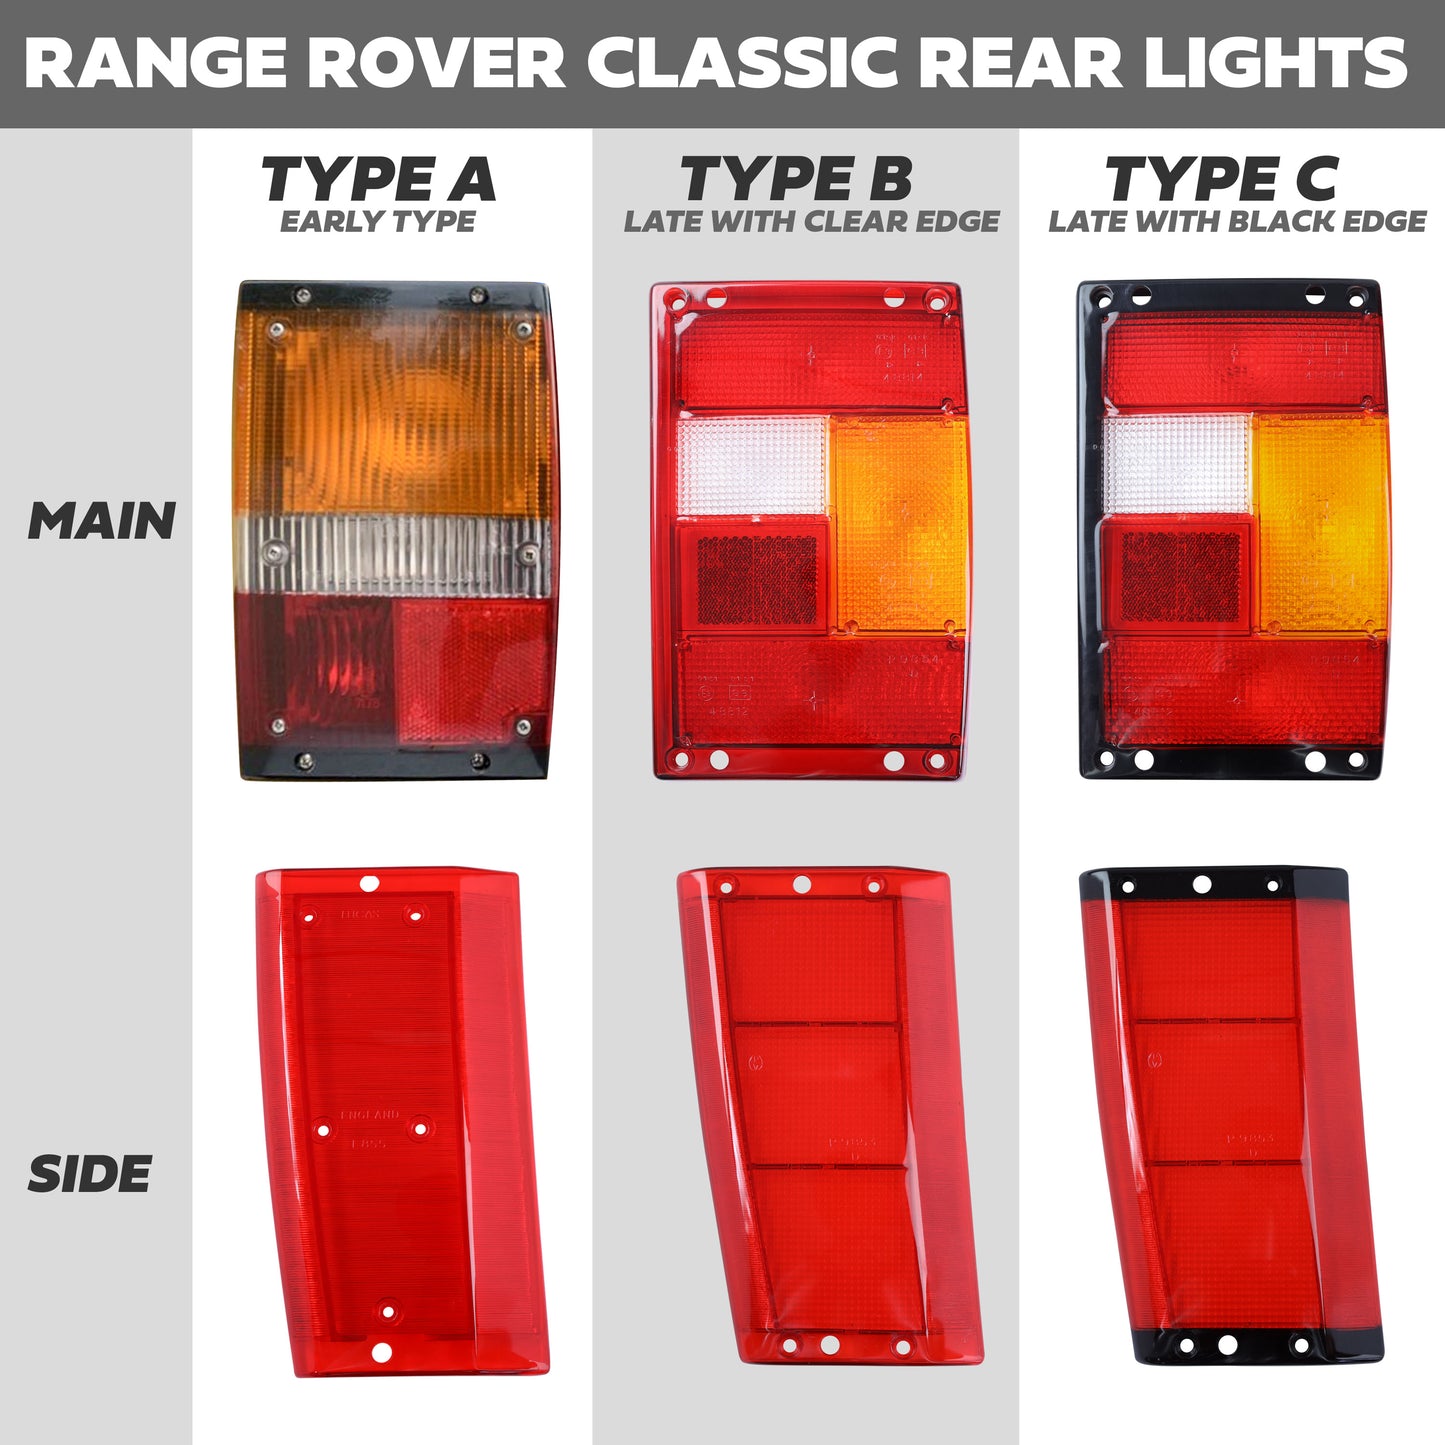 Rear Light Lens for Range Rover Classic - Main Lens - Clear Edge - Left Side